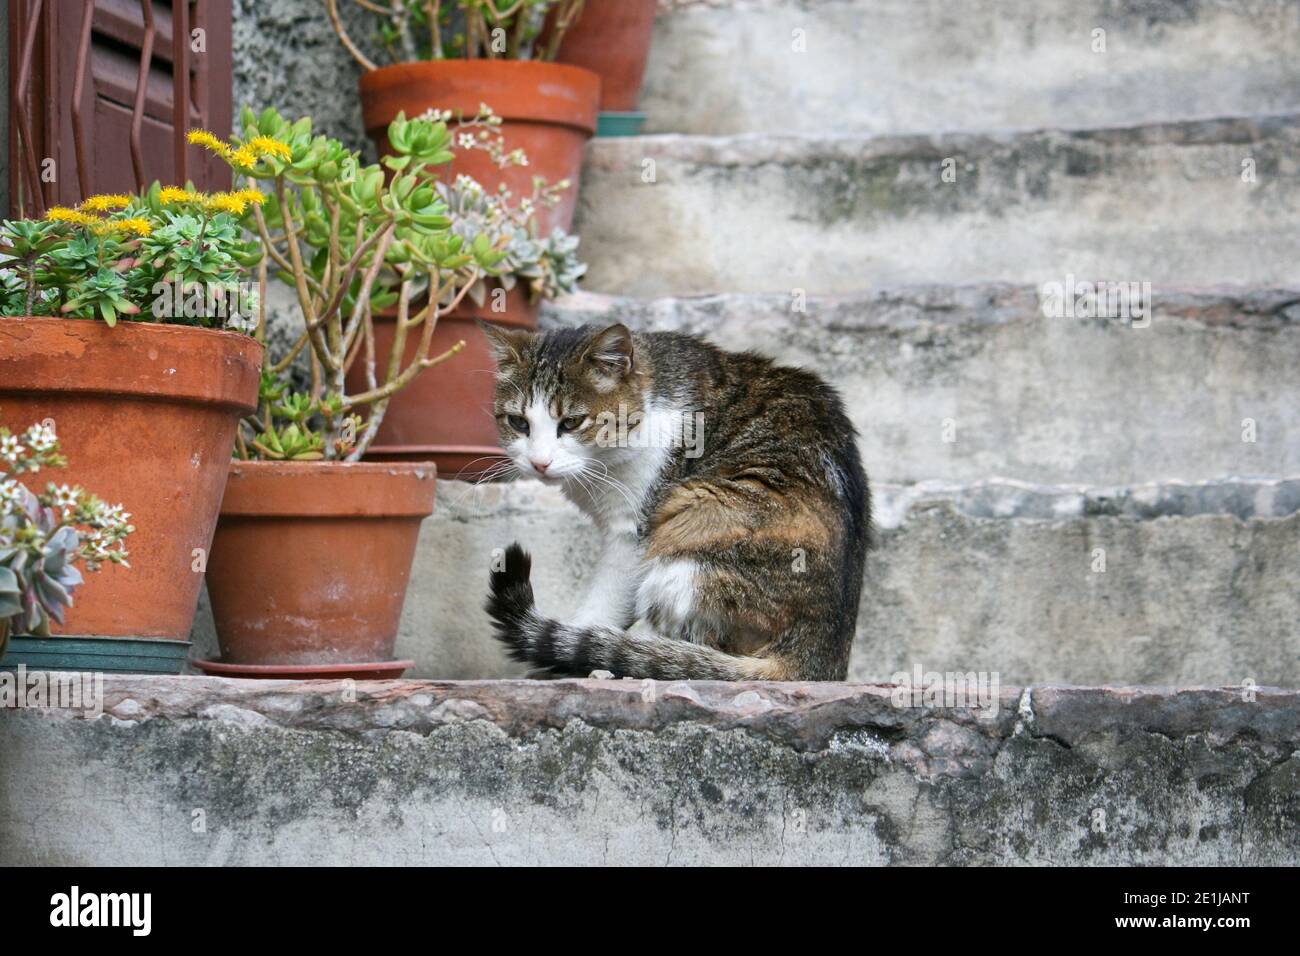 Il bel gatto era seduto su una scala sul Lago di Garda. Aveva qualcosa nel suo fuoco e non ha notato i passanti-da. Foto Stock